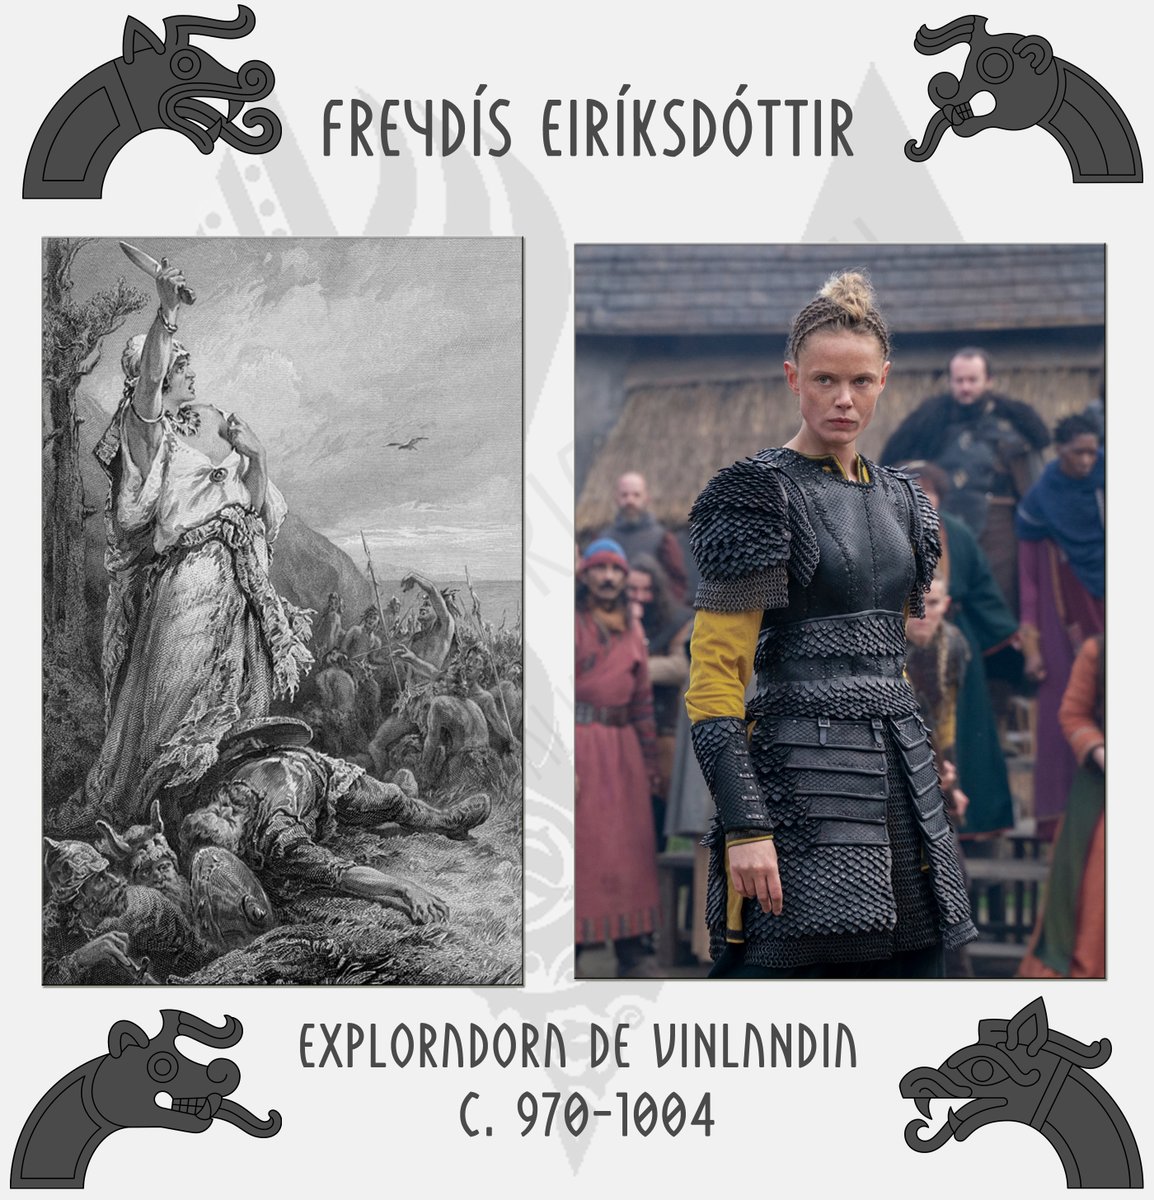  #AnalizandoVikingsValhalla PERSONAJES Freydís Eiríksdóttir, exploradora de Vinlandia. Freydís es un personaje femenino fuerte, poderoso e impactante, pero ¿qué hay de histórico detrás de ella? ¡Vamos a verlo! 